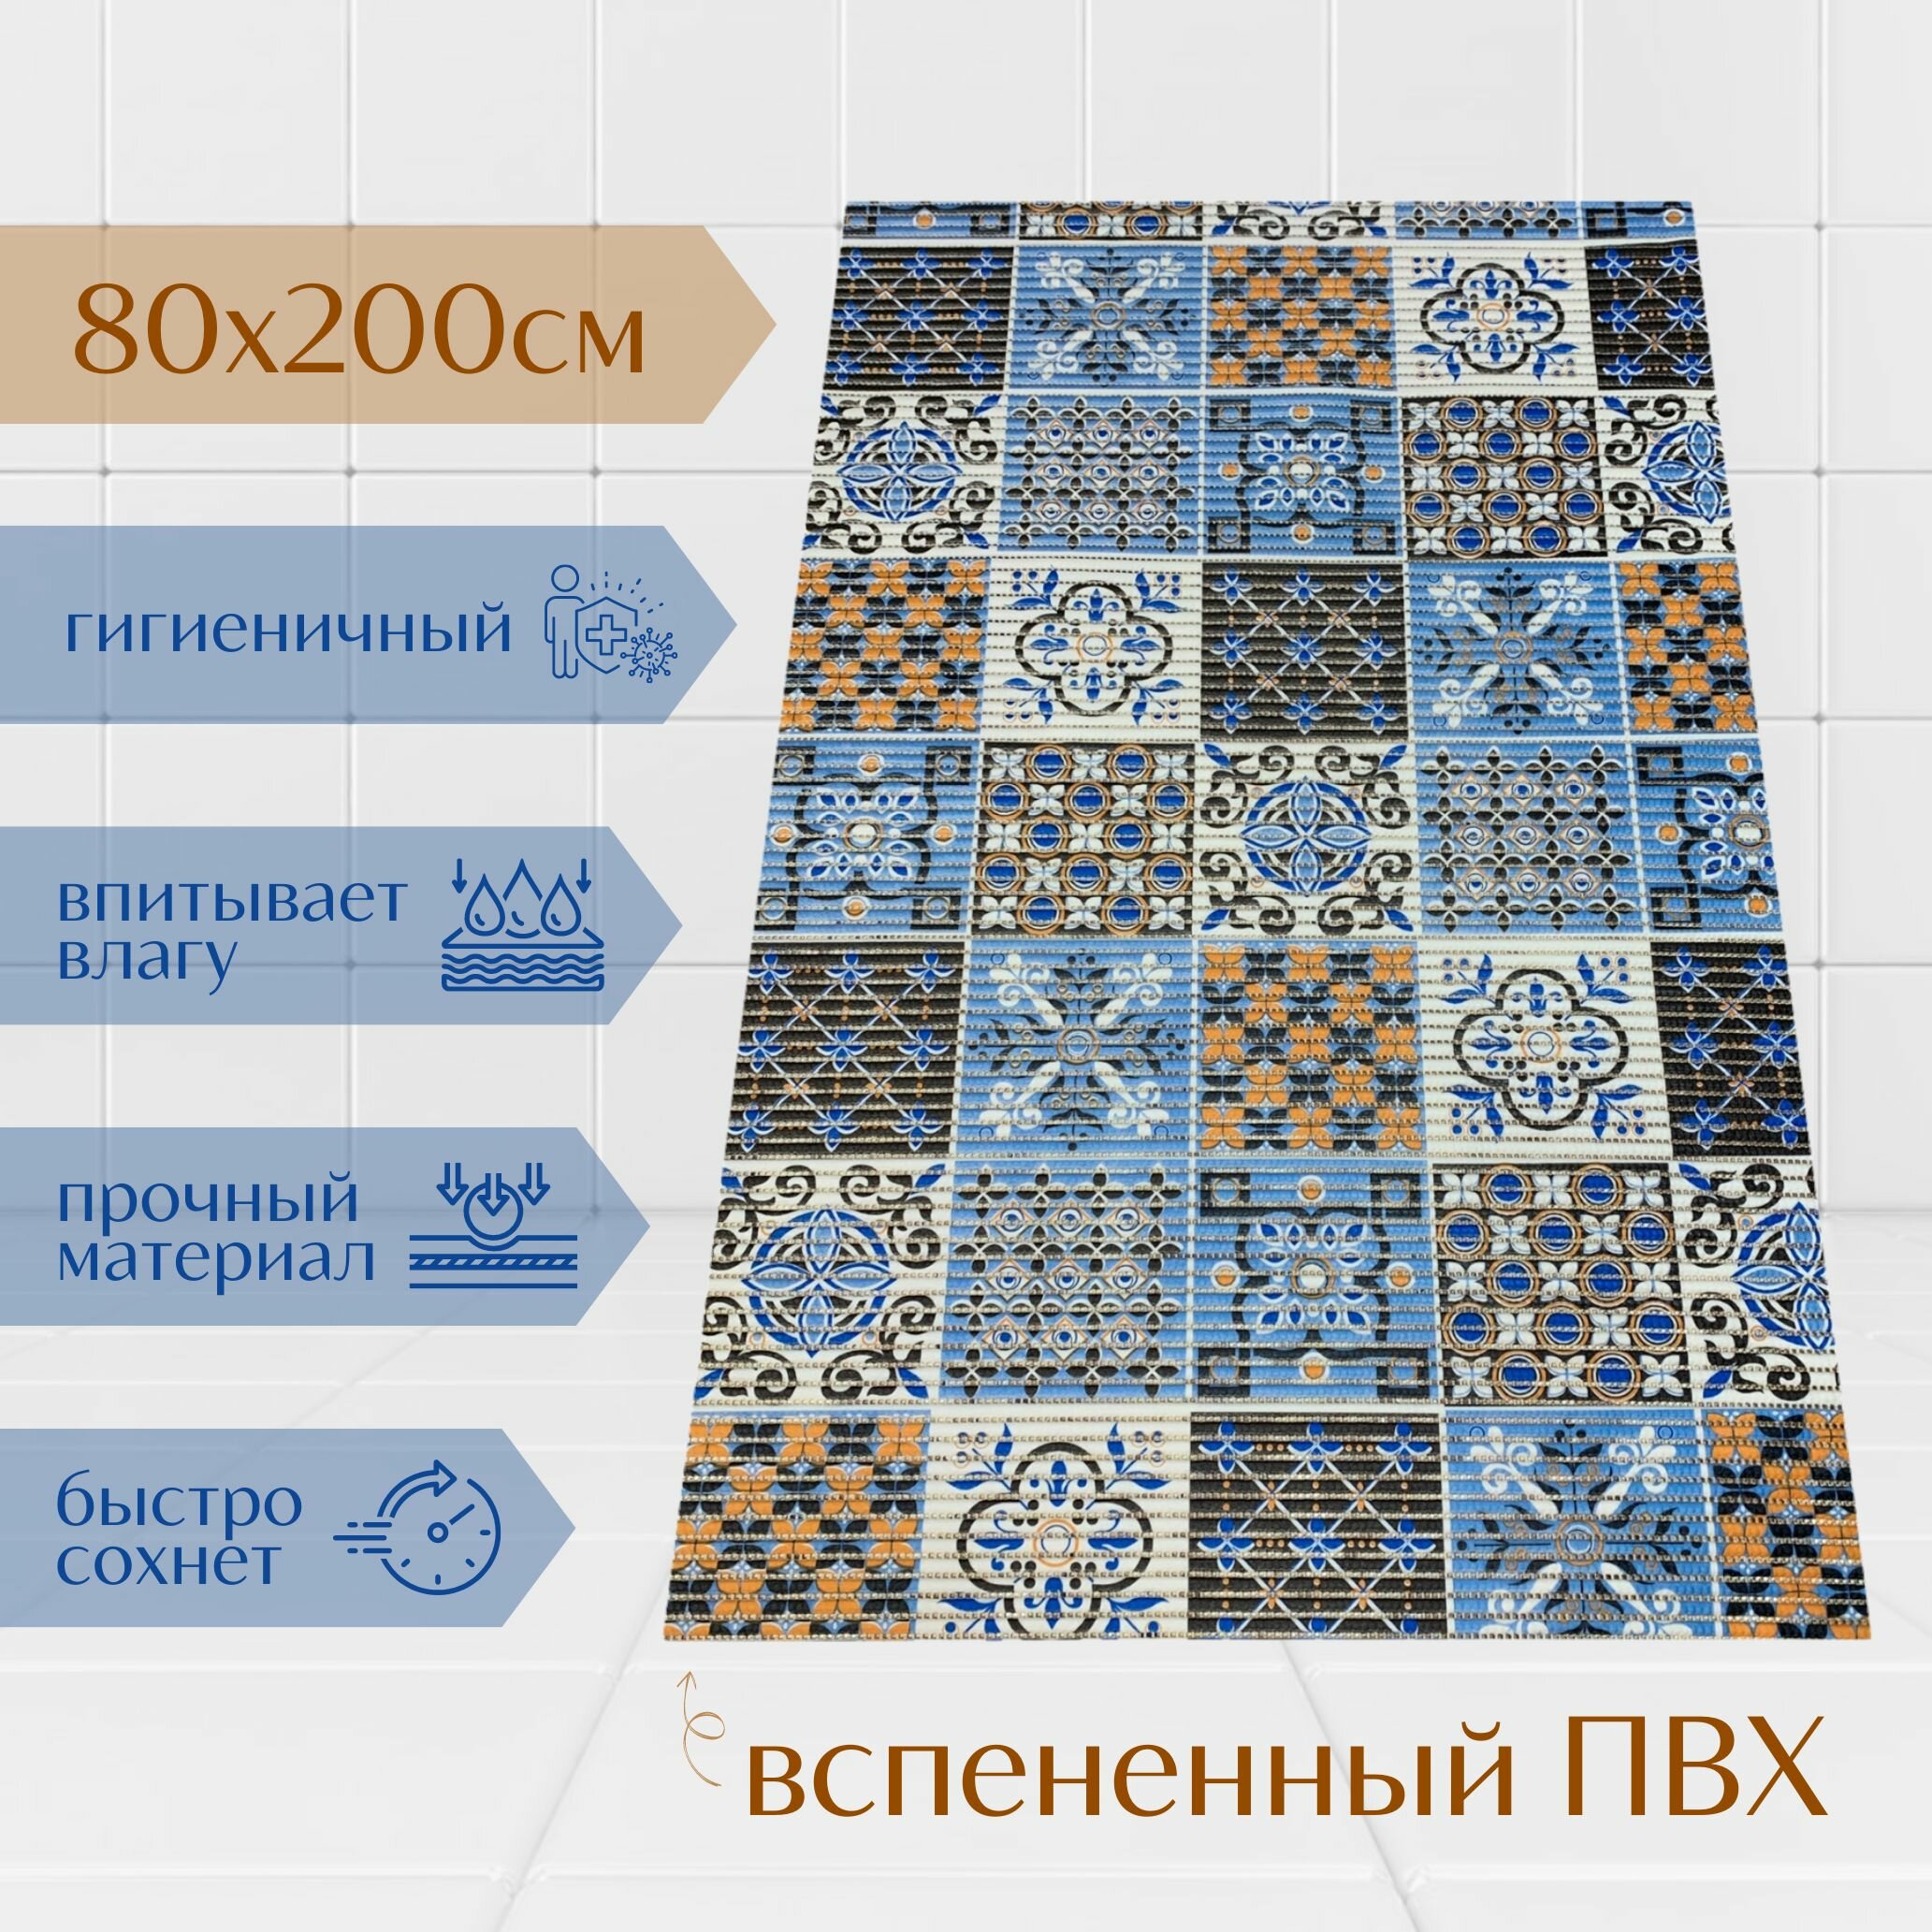 Напольный коврик для ванной из вспененного ПВХ 80x200 см коричневый/голубой/белый с рисунком